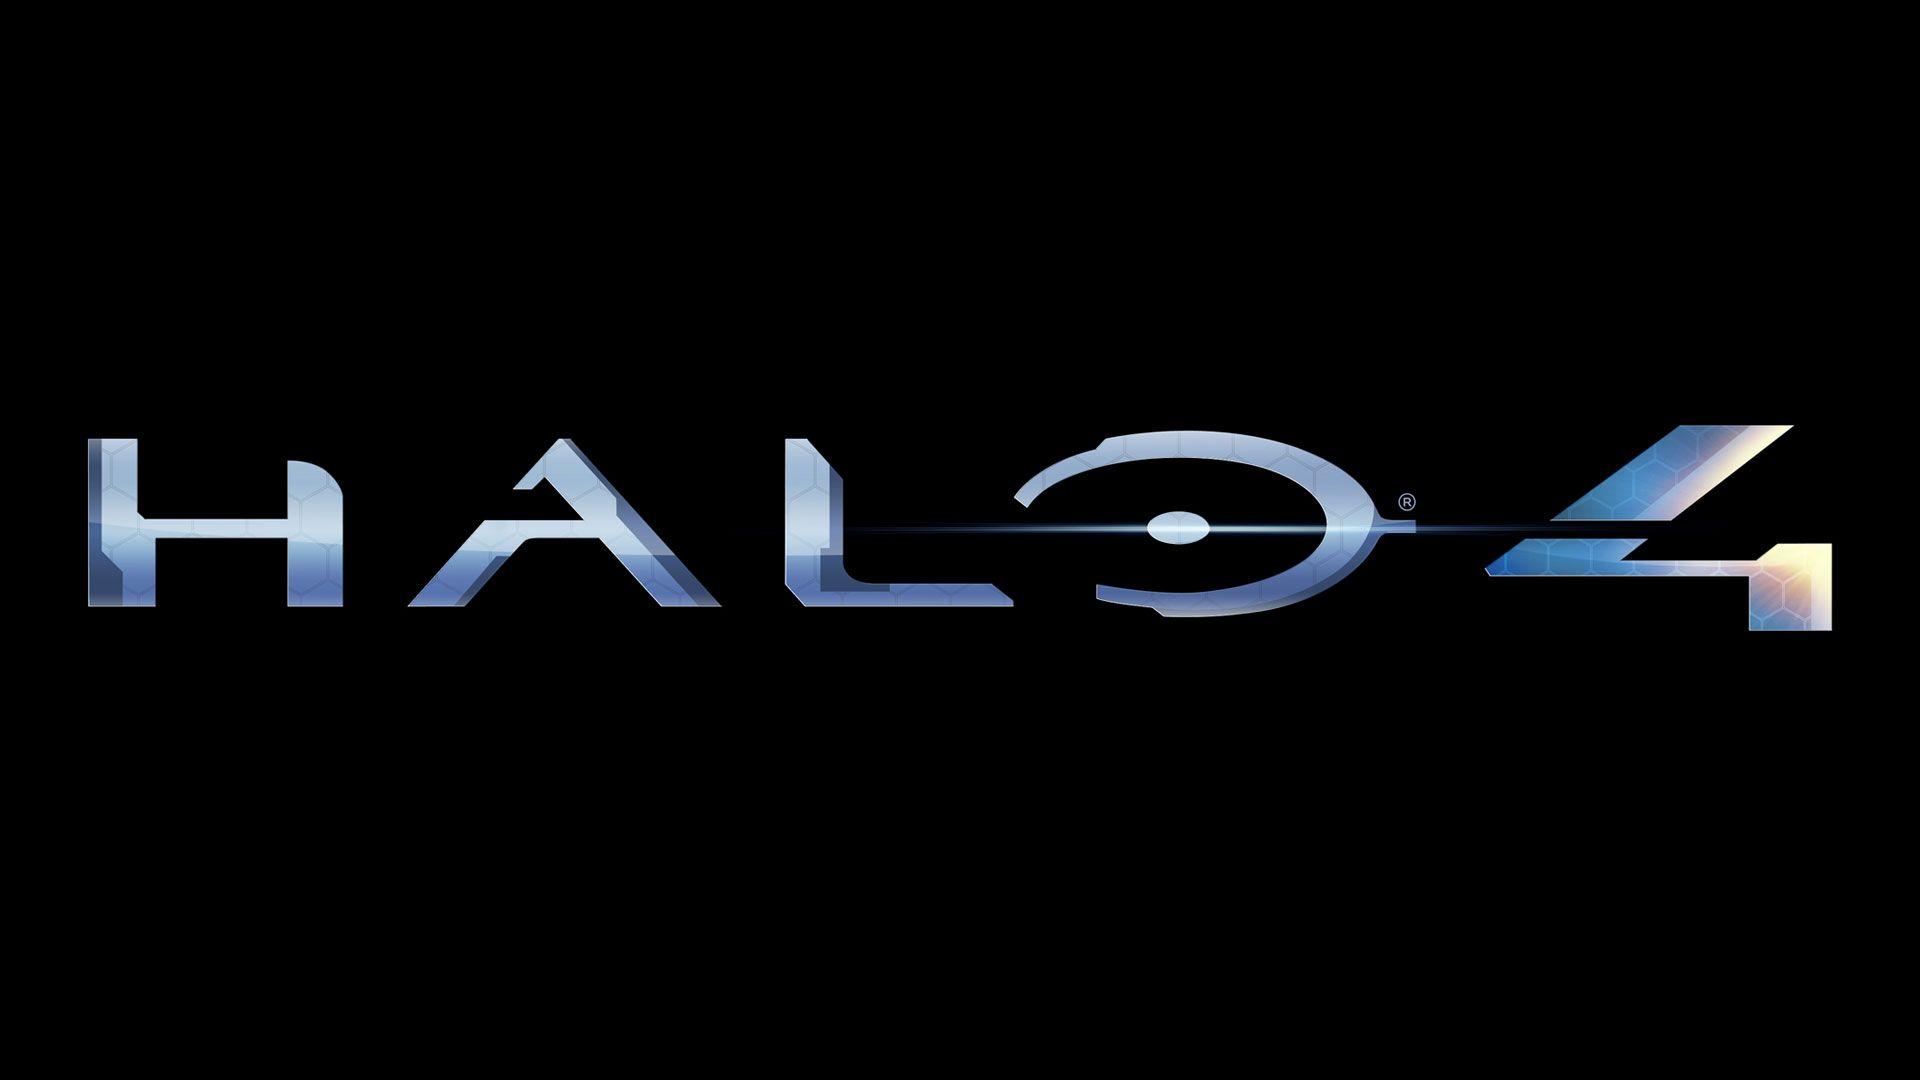 Halo 4 Wallpaper in HD